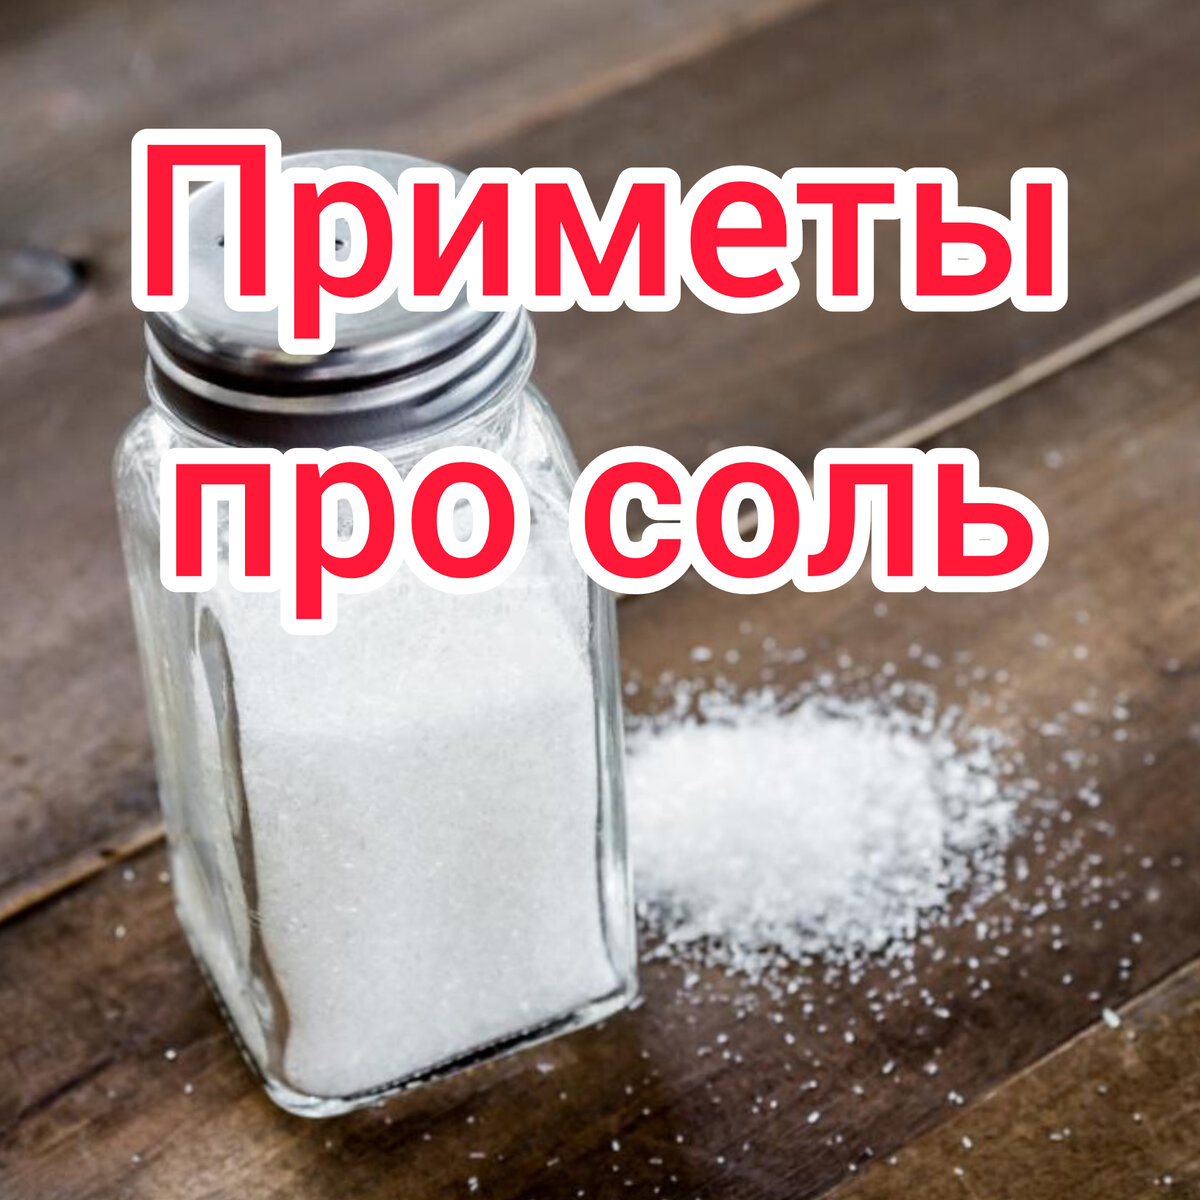 Почему соль должна быть закрыта. Дарят ли соль в подарок. Почему рассыпать соль — плохая примета